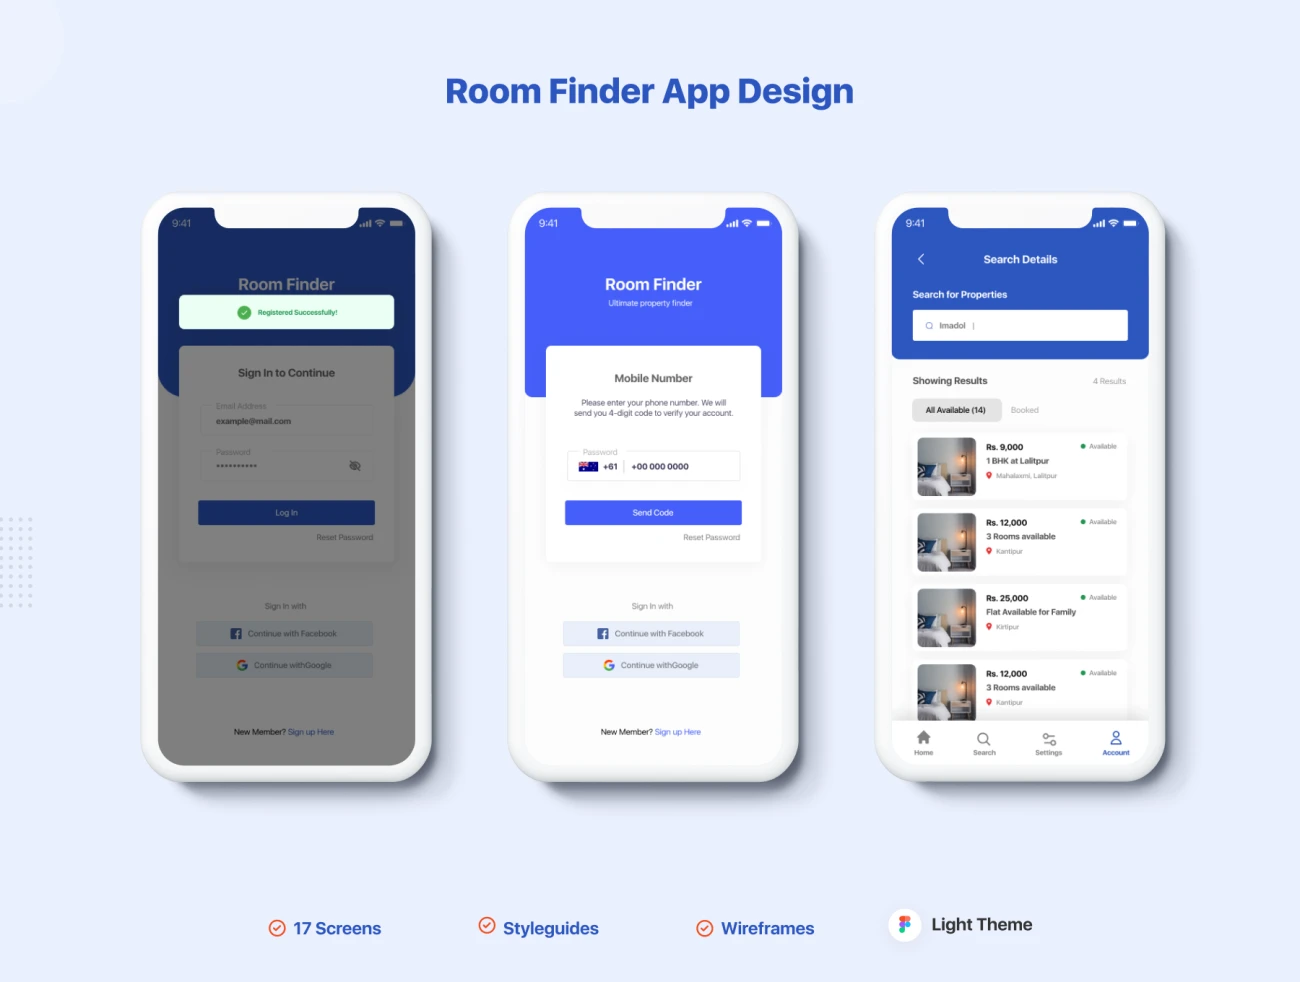 17屏找房租房手机应用UI套件设计素材 Room Finder App Design .figma插图13